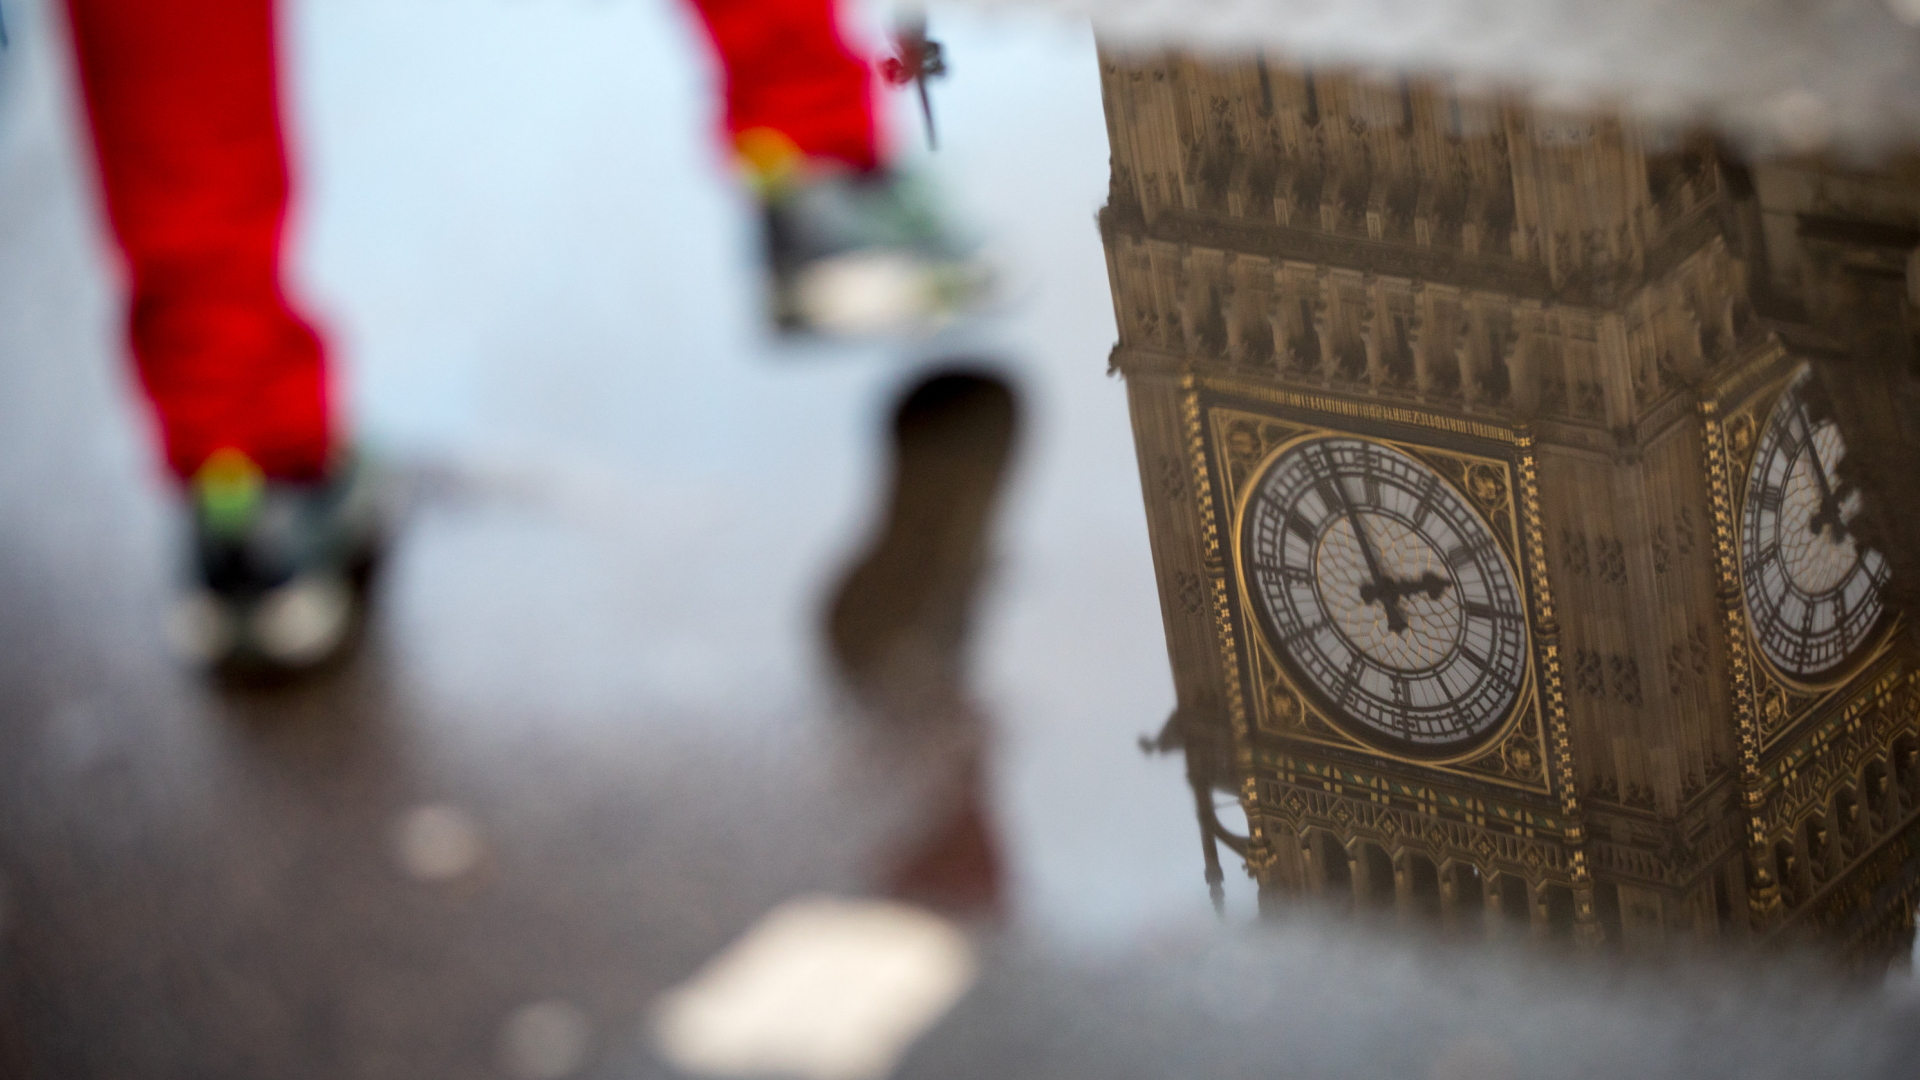 Westminster Palace spiegelt sich in einer Pfütze | dpa